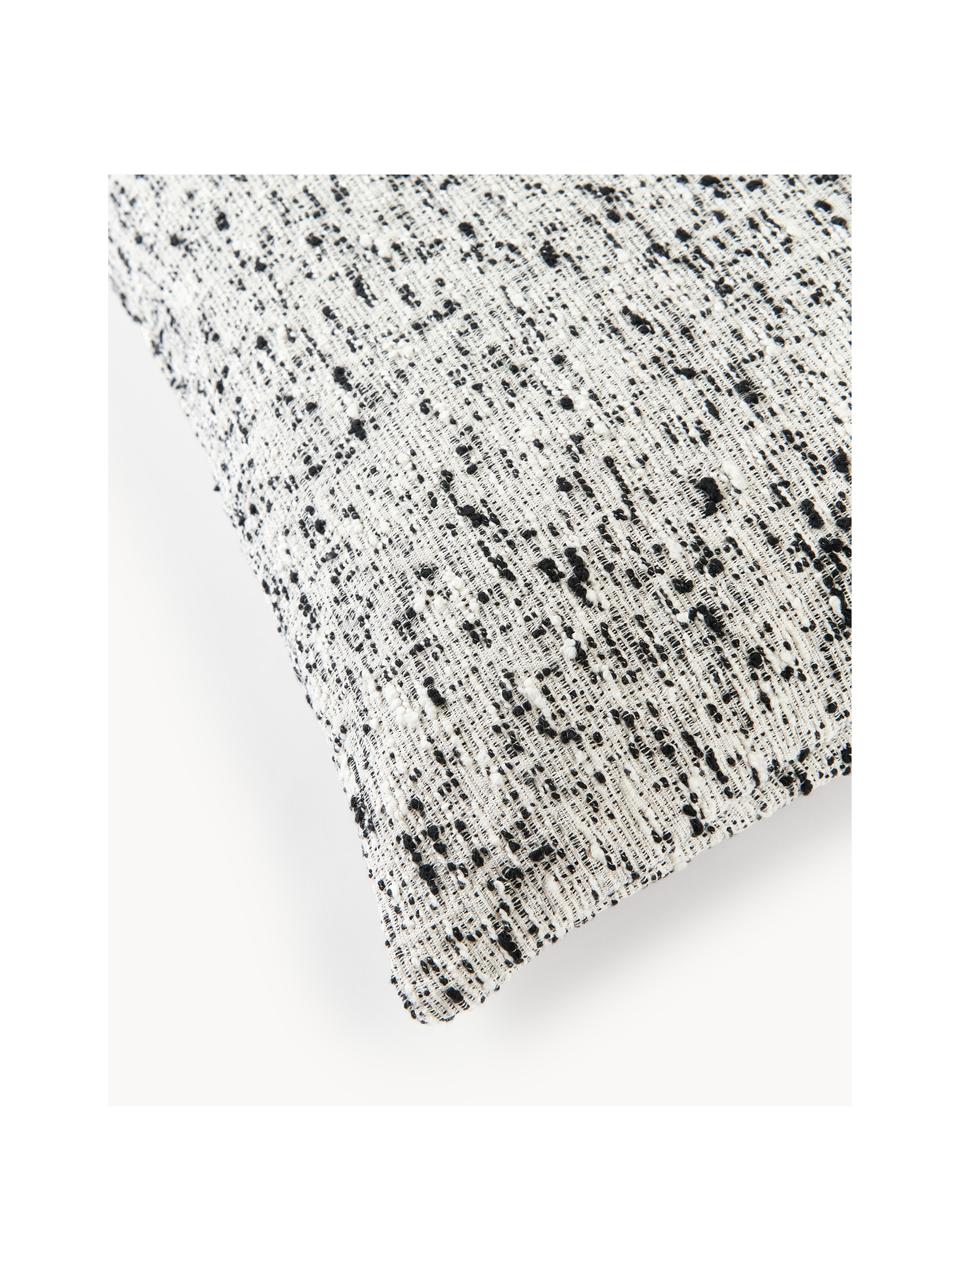 Buklé poťah na vankúš Talea, Buklé (92 % bavlna, 8 % polyester)

Buklé je materiál, ktorý je charakteristický svojou nepravidelne zakrivenou štruktúrou. Charakteristický povrch tvoria tkané slučky z rôznych priadzí, ktoré dodávajú tkanine jedinečnú štruktúru. Slučková štruktúra má izolačný a zároveň nadýchaný efekt, vďaka čomu je látka obzvlášť plyšová., Čierna, biela, Š 50 x D 50 cm